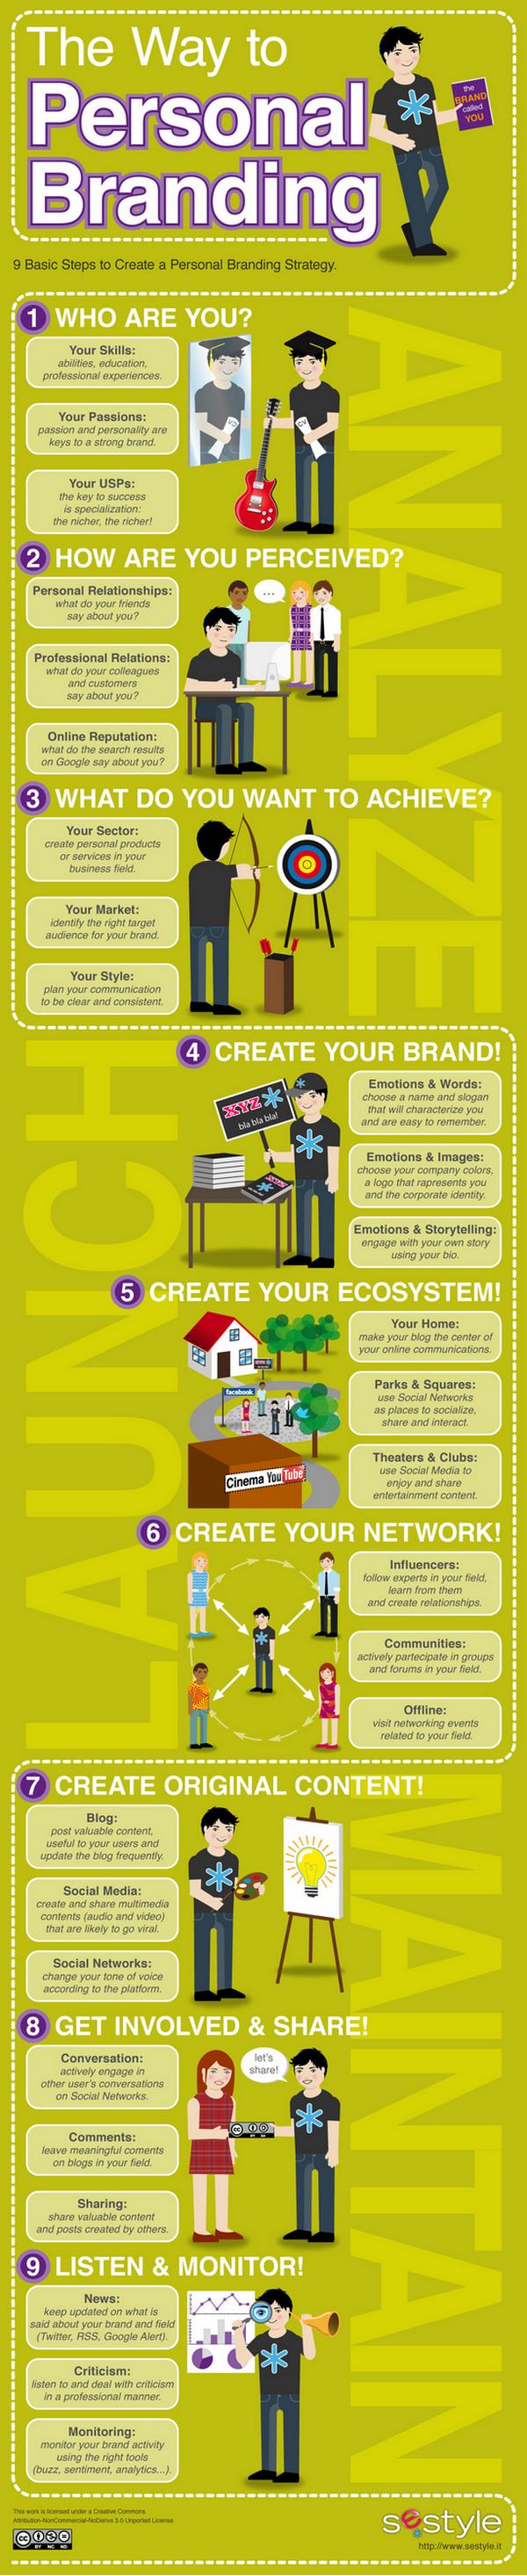 9 pasos básicos para crear una estratégia de marca personal (personal branding) 1